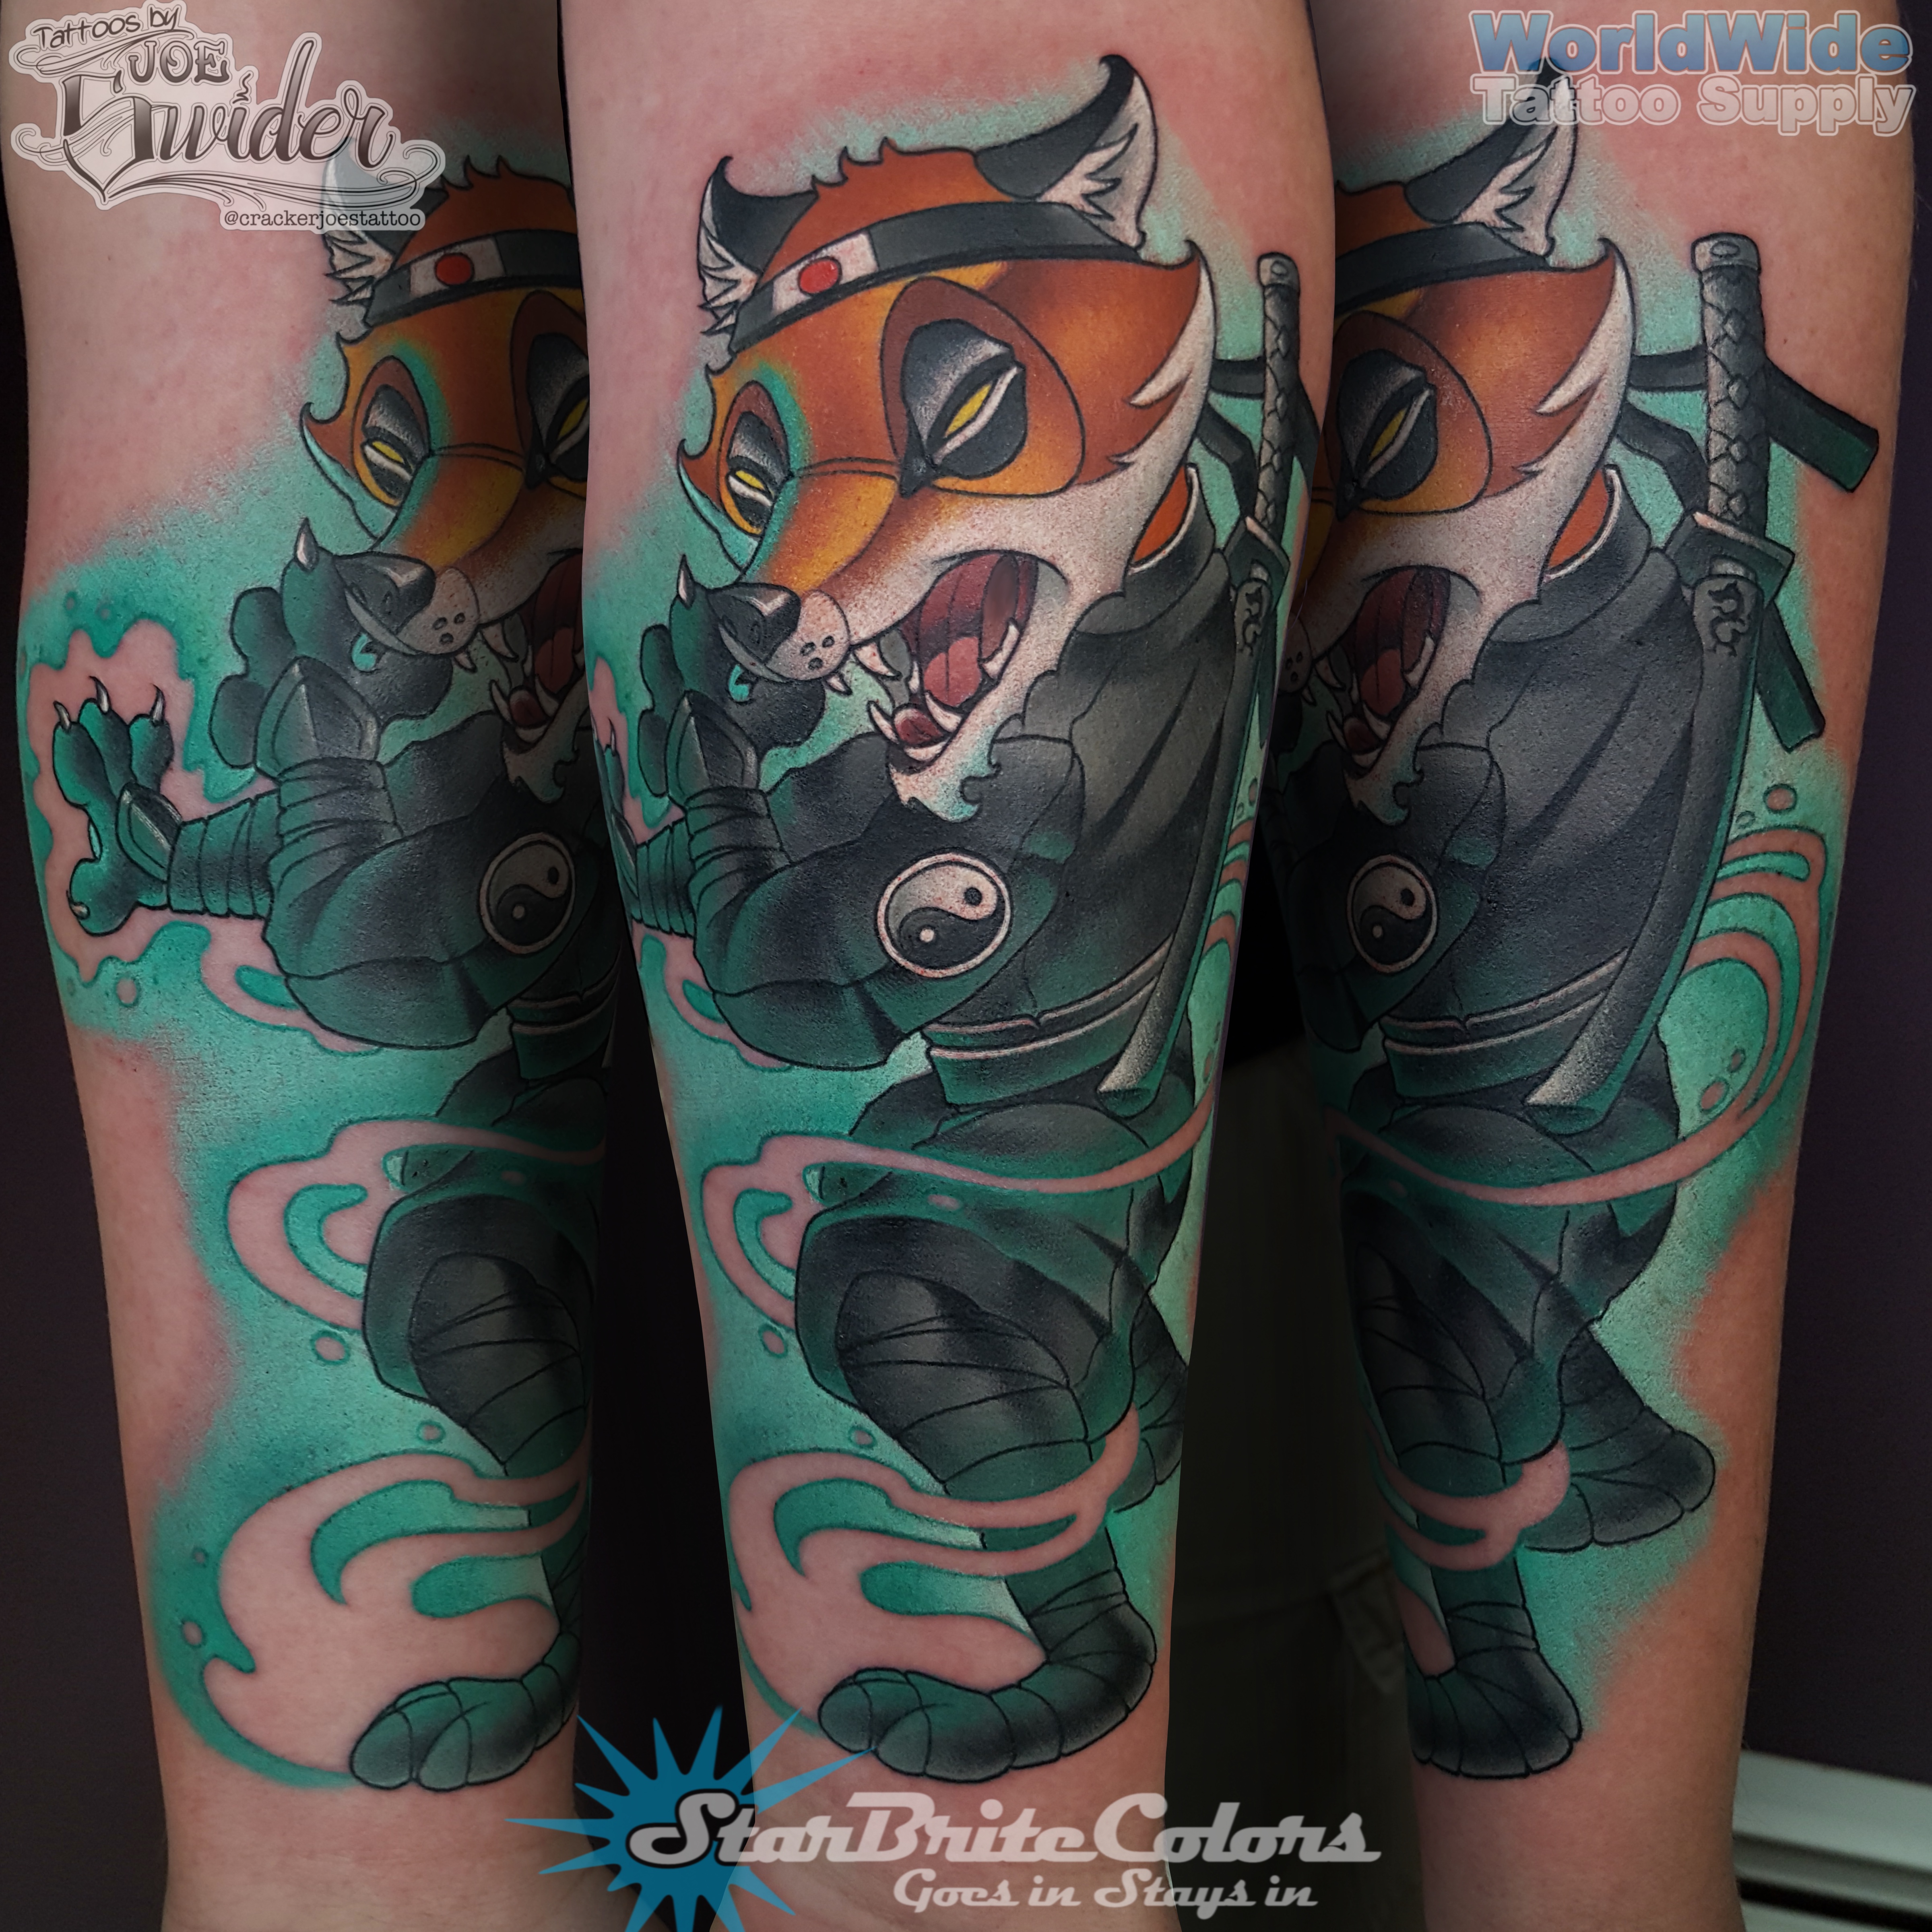 Ninja Fox Tattoo by Connecticut tattoo artist Cracker Joe Swider